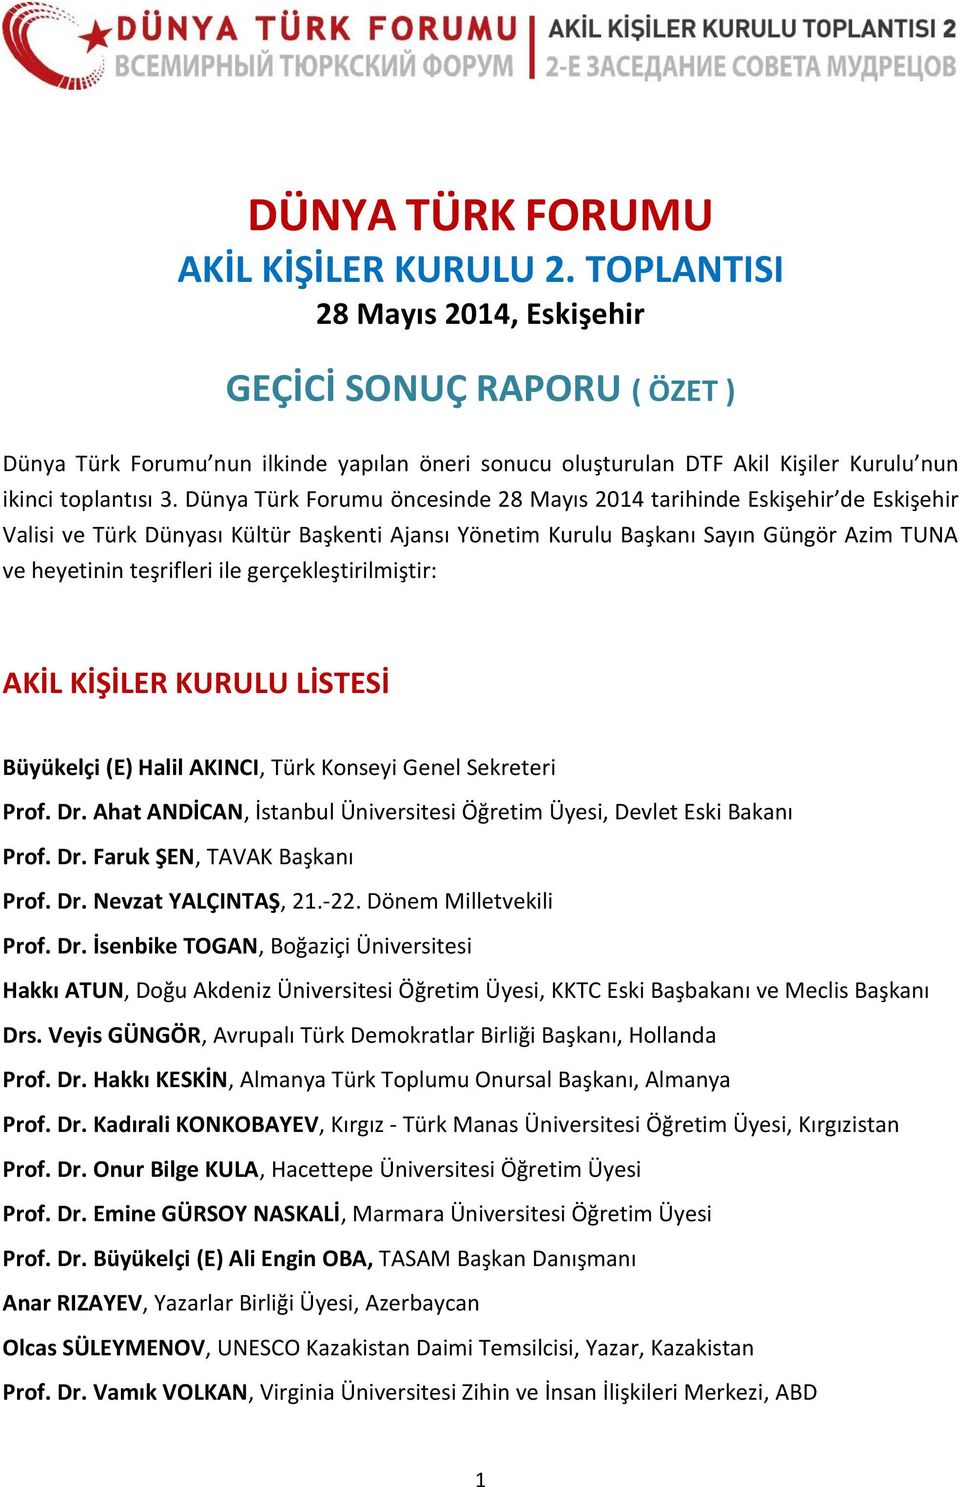 Dünya Türk Forumu öncesinde 28 Mayıs 2014 tarihinde Eskişehir de Eskişehir Valisi ve Türk Dünyası Kültür Başkenti Ajansı Yönetim Kurulu Başkanı Sayın Güngör Azim TUNA ve heyetinin teşrifleri ile